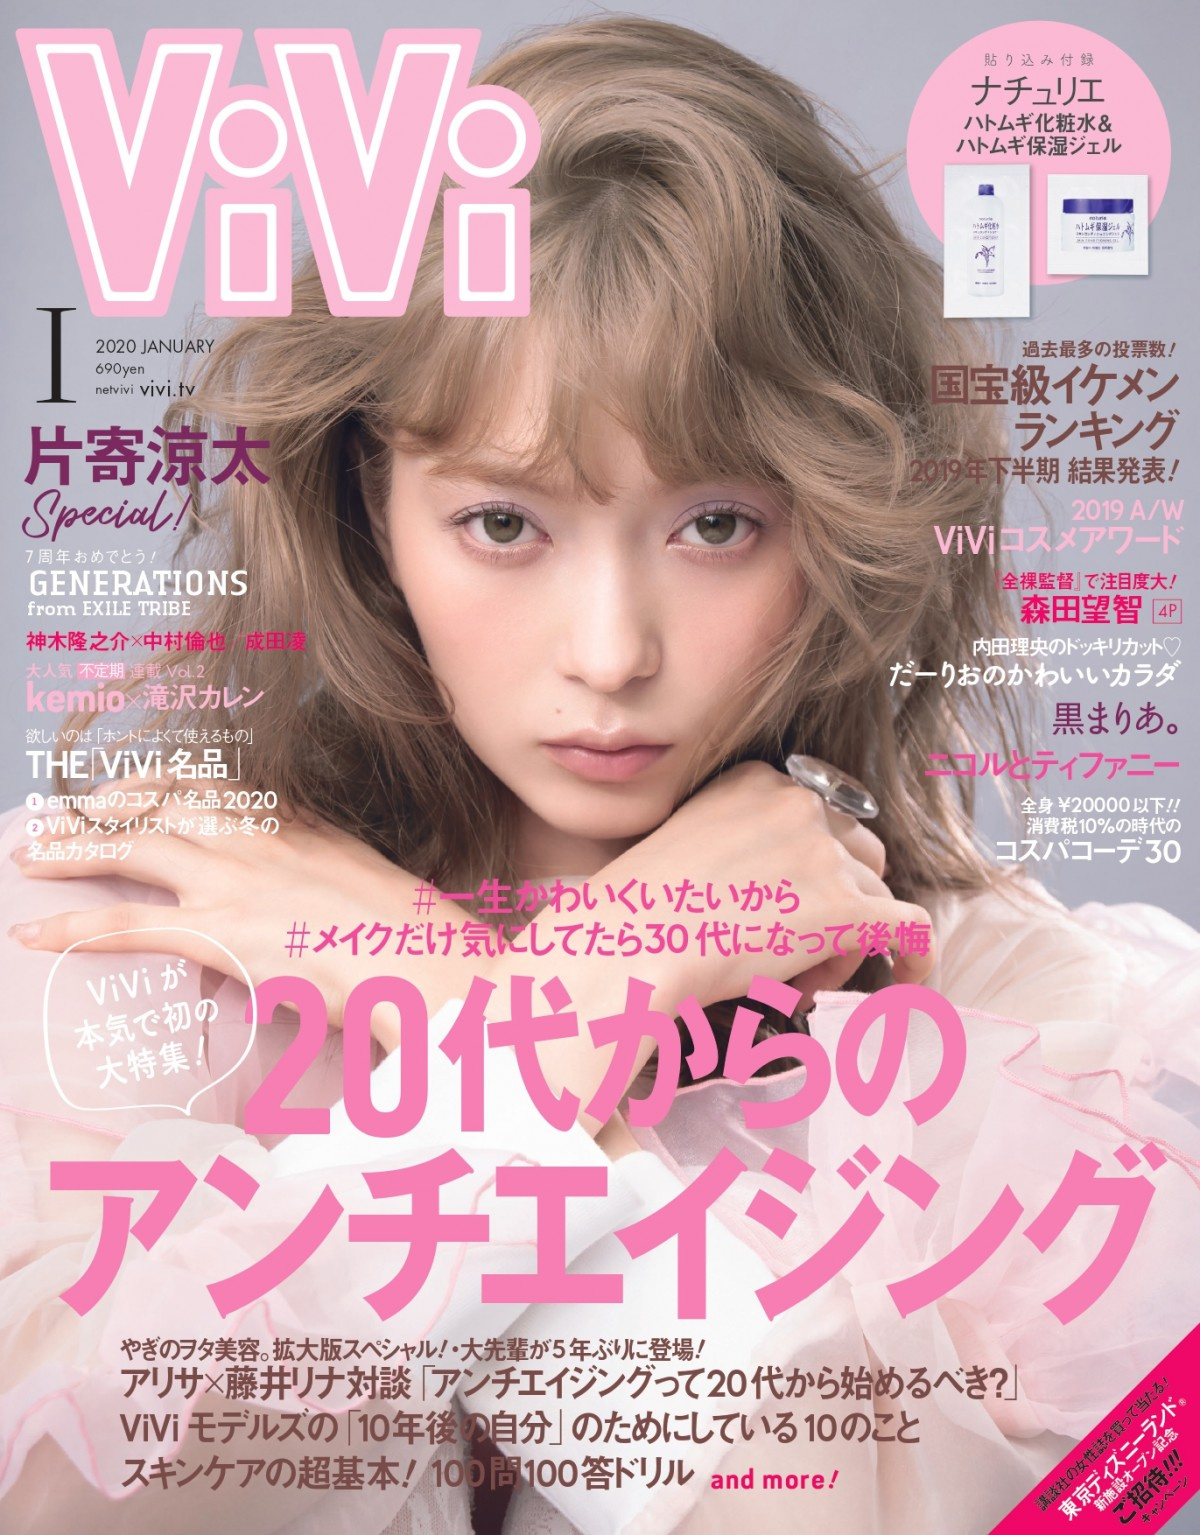 キンプリ平野紫耀 Vivi 国宝級イケメンランキング 殿堂入り Oricon News